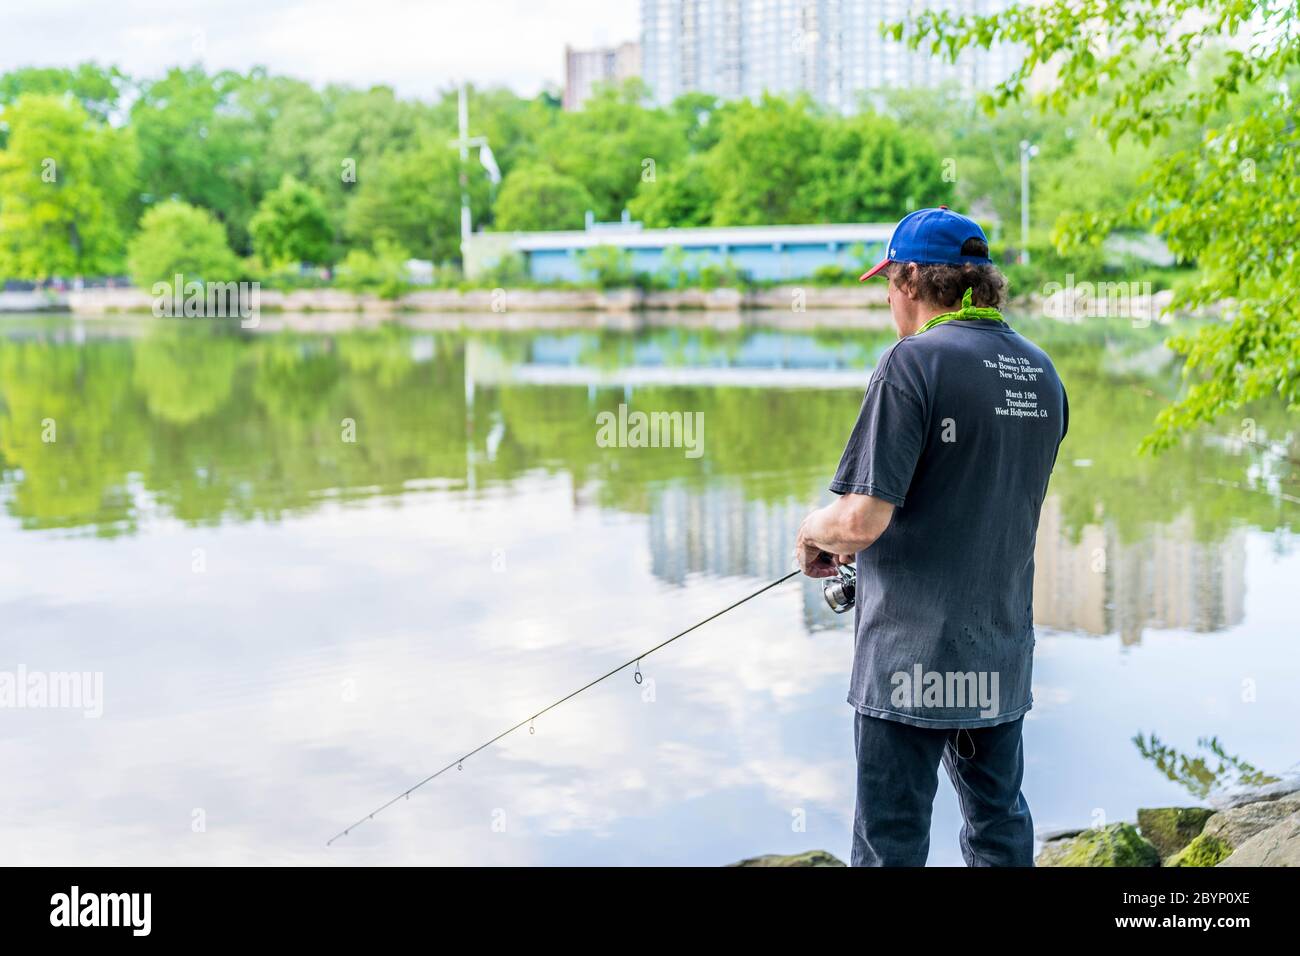 Manhattan, New York - 30 maggio 2020: Il pescatore getta la sua linea fuori dalle spiagge di Inwood Hill Park. Foto Stock